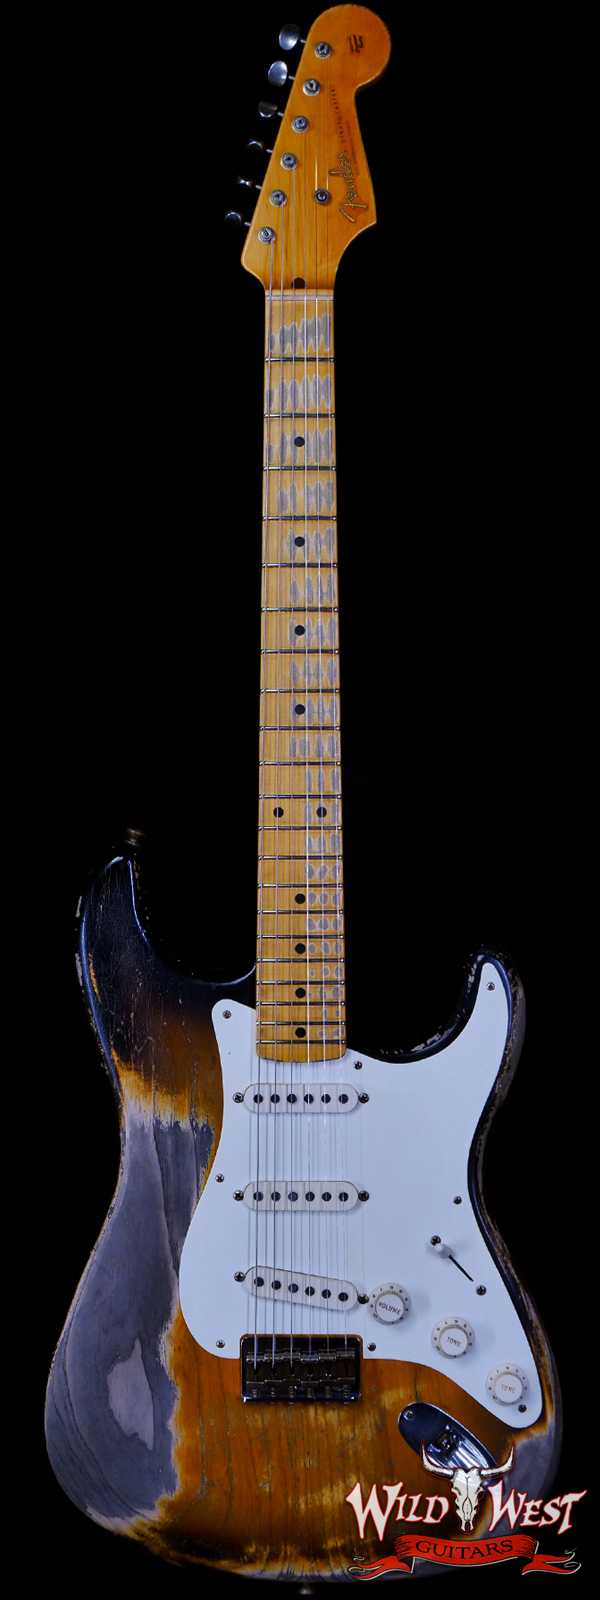 Fender Custom Shop Greg Fessler Masterbuilt 1955 Stratocaster Hardtail H/W Pickups Heavy Relic 2 Tone Sunburst 6.80 LBS